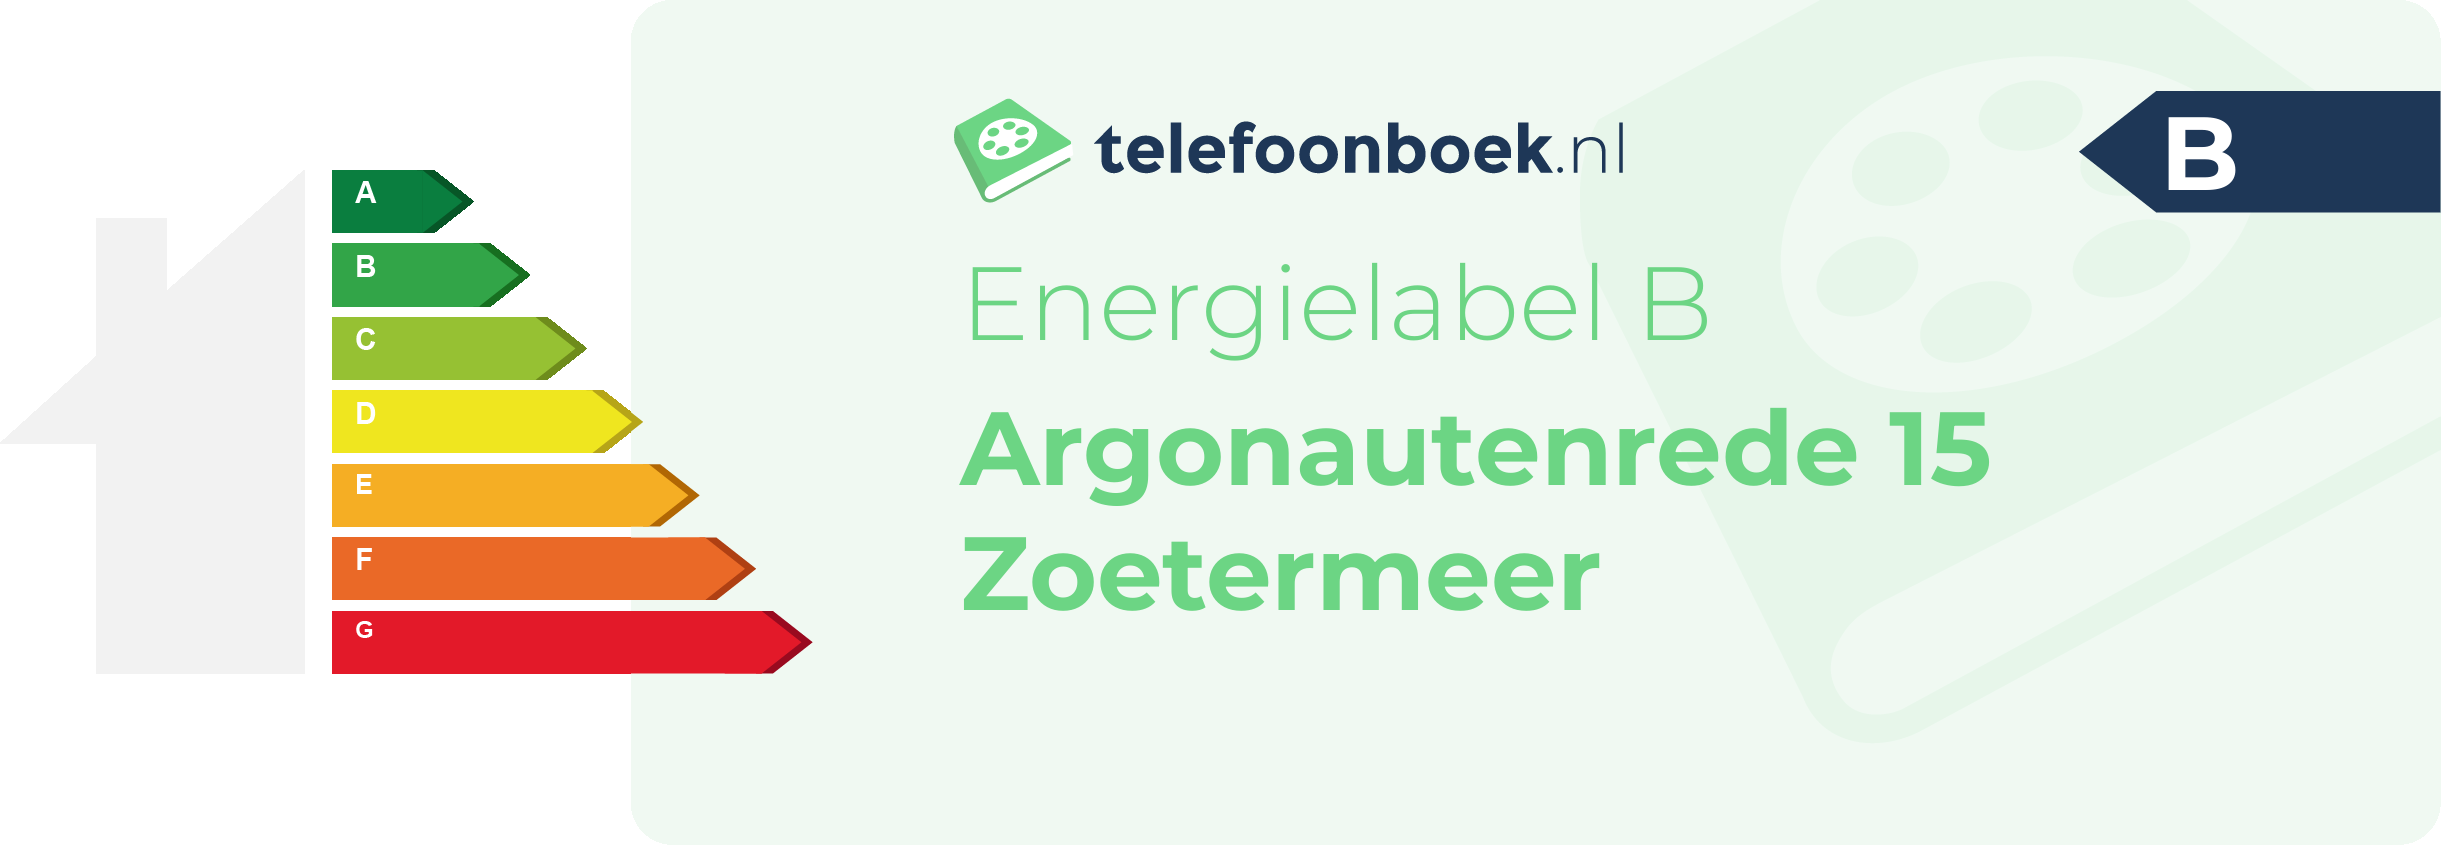 Energielabel Argonautenrede 15 Zoetermeer